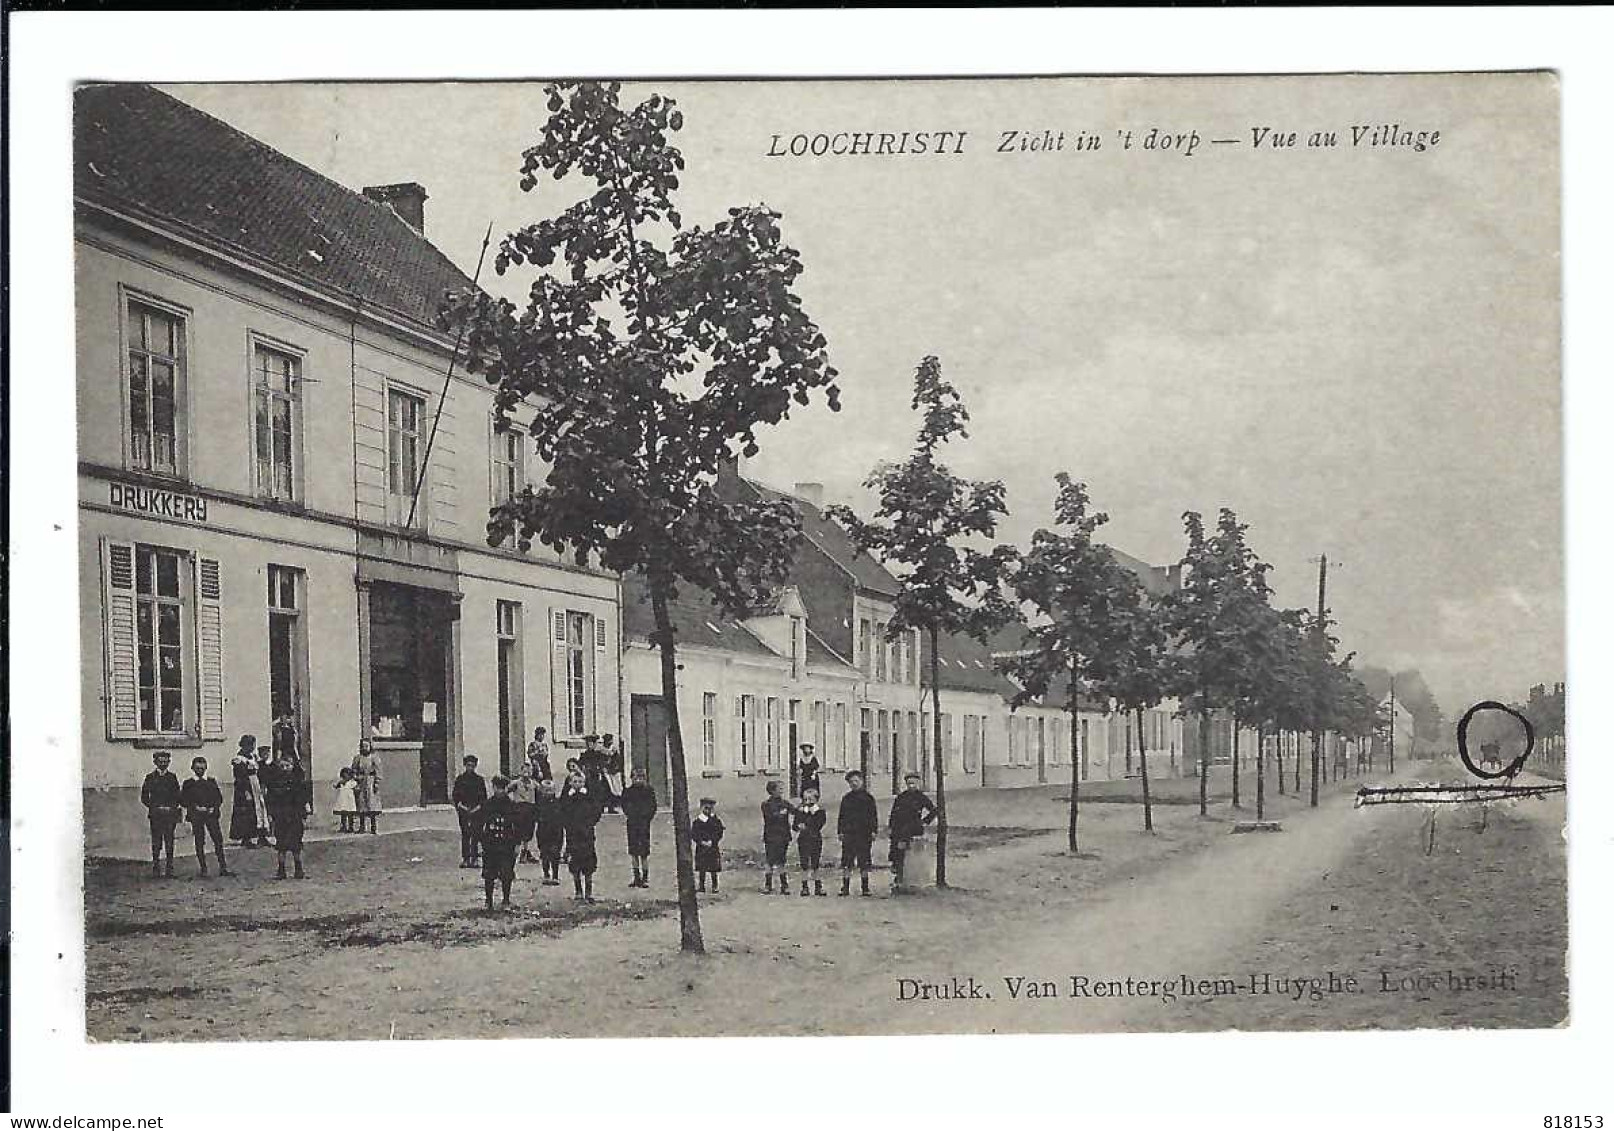 Lochristi  LOOCHRISTI   Zicht In 't Dorp - Vue Au Village  1908 - Lochristi